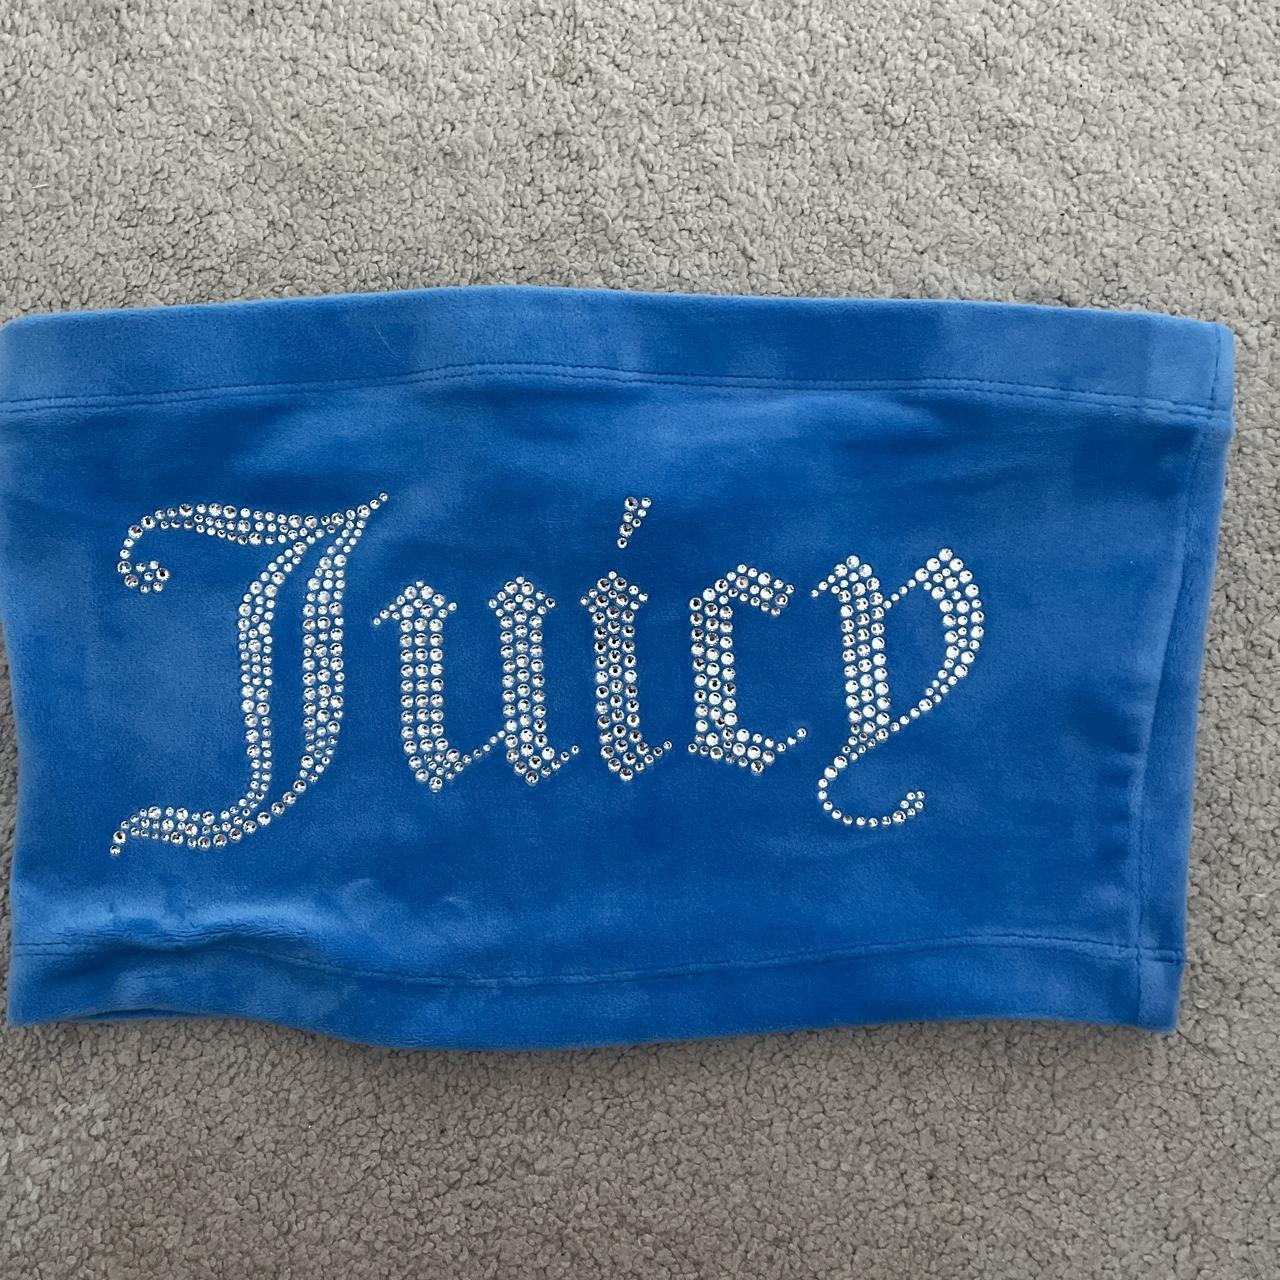 Juicy couture blue bandeau top - Depop